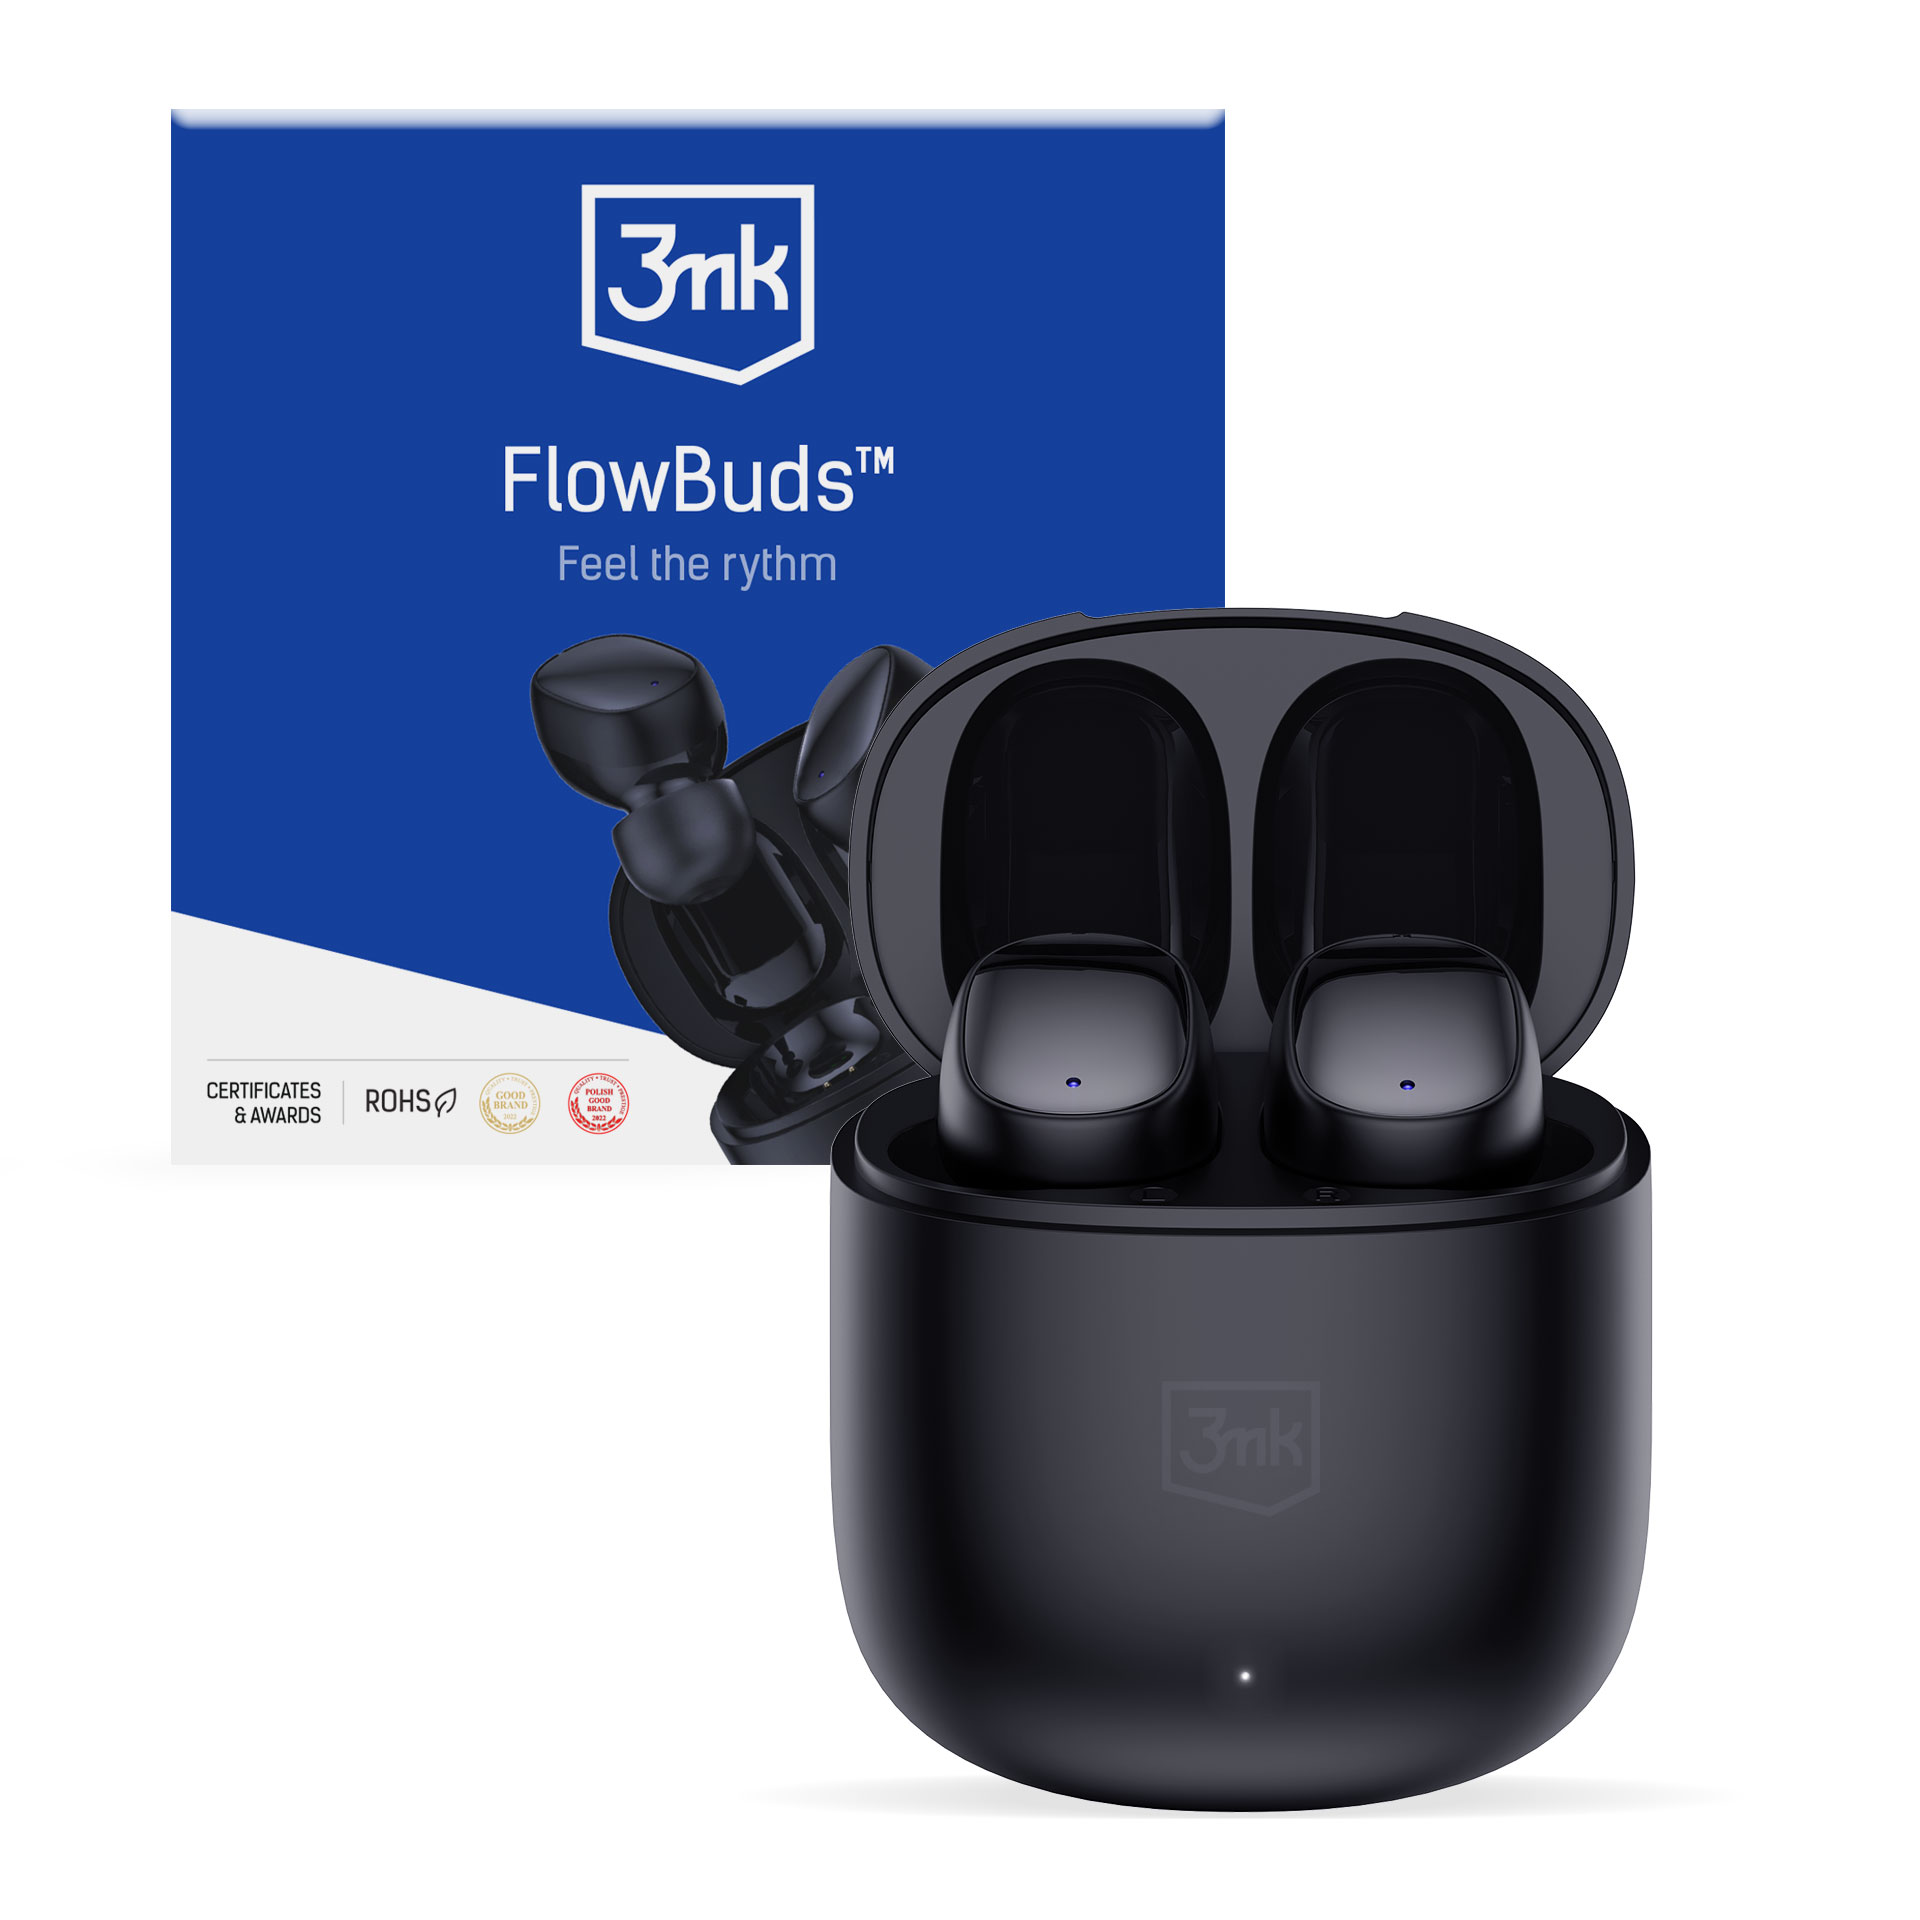 bezdrátová stereo sluchátka FlowBuds, nabíjecí pouzdro, černá